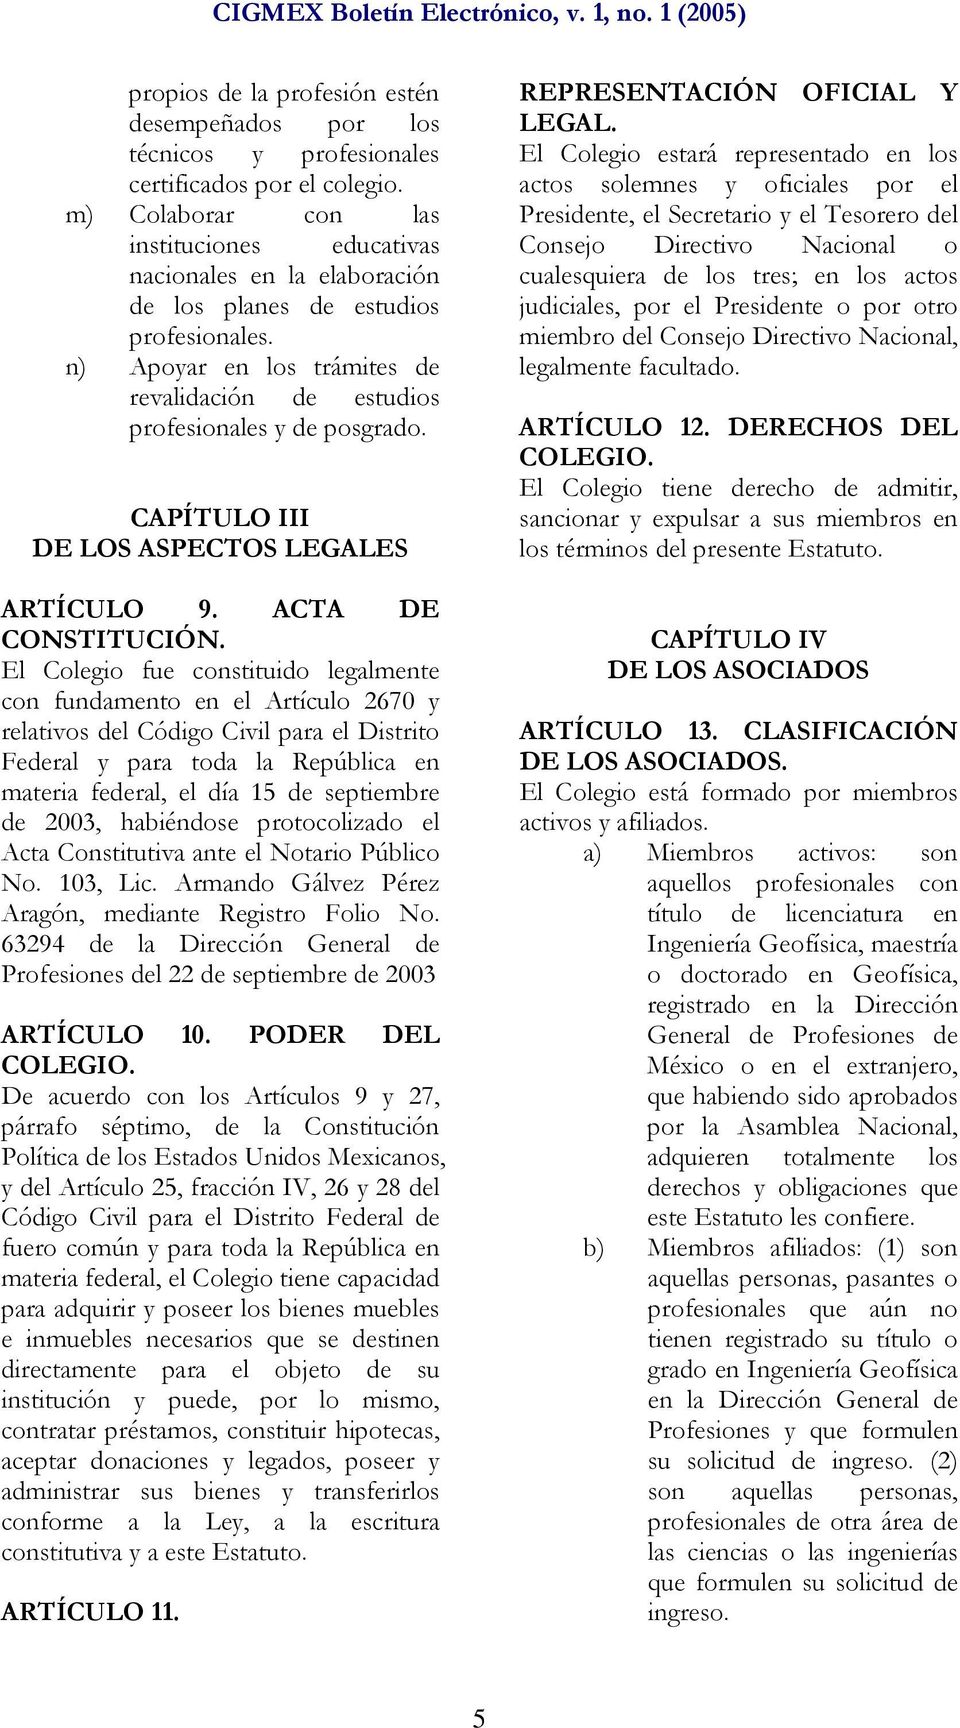 CAPÍTULO III DE LOS ASPECTOS LEGALES ARTÍCULO 9. ACTA DE CONSTITUCIÓN.